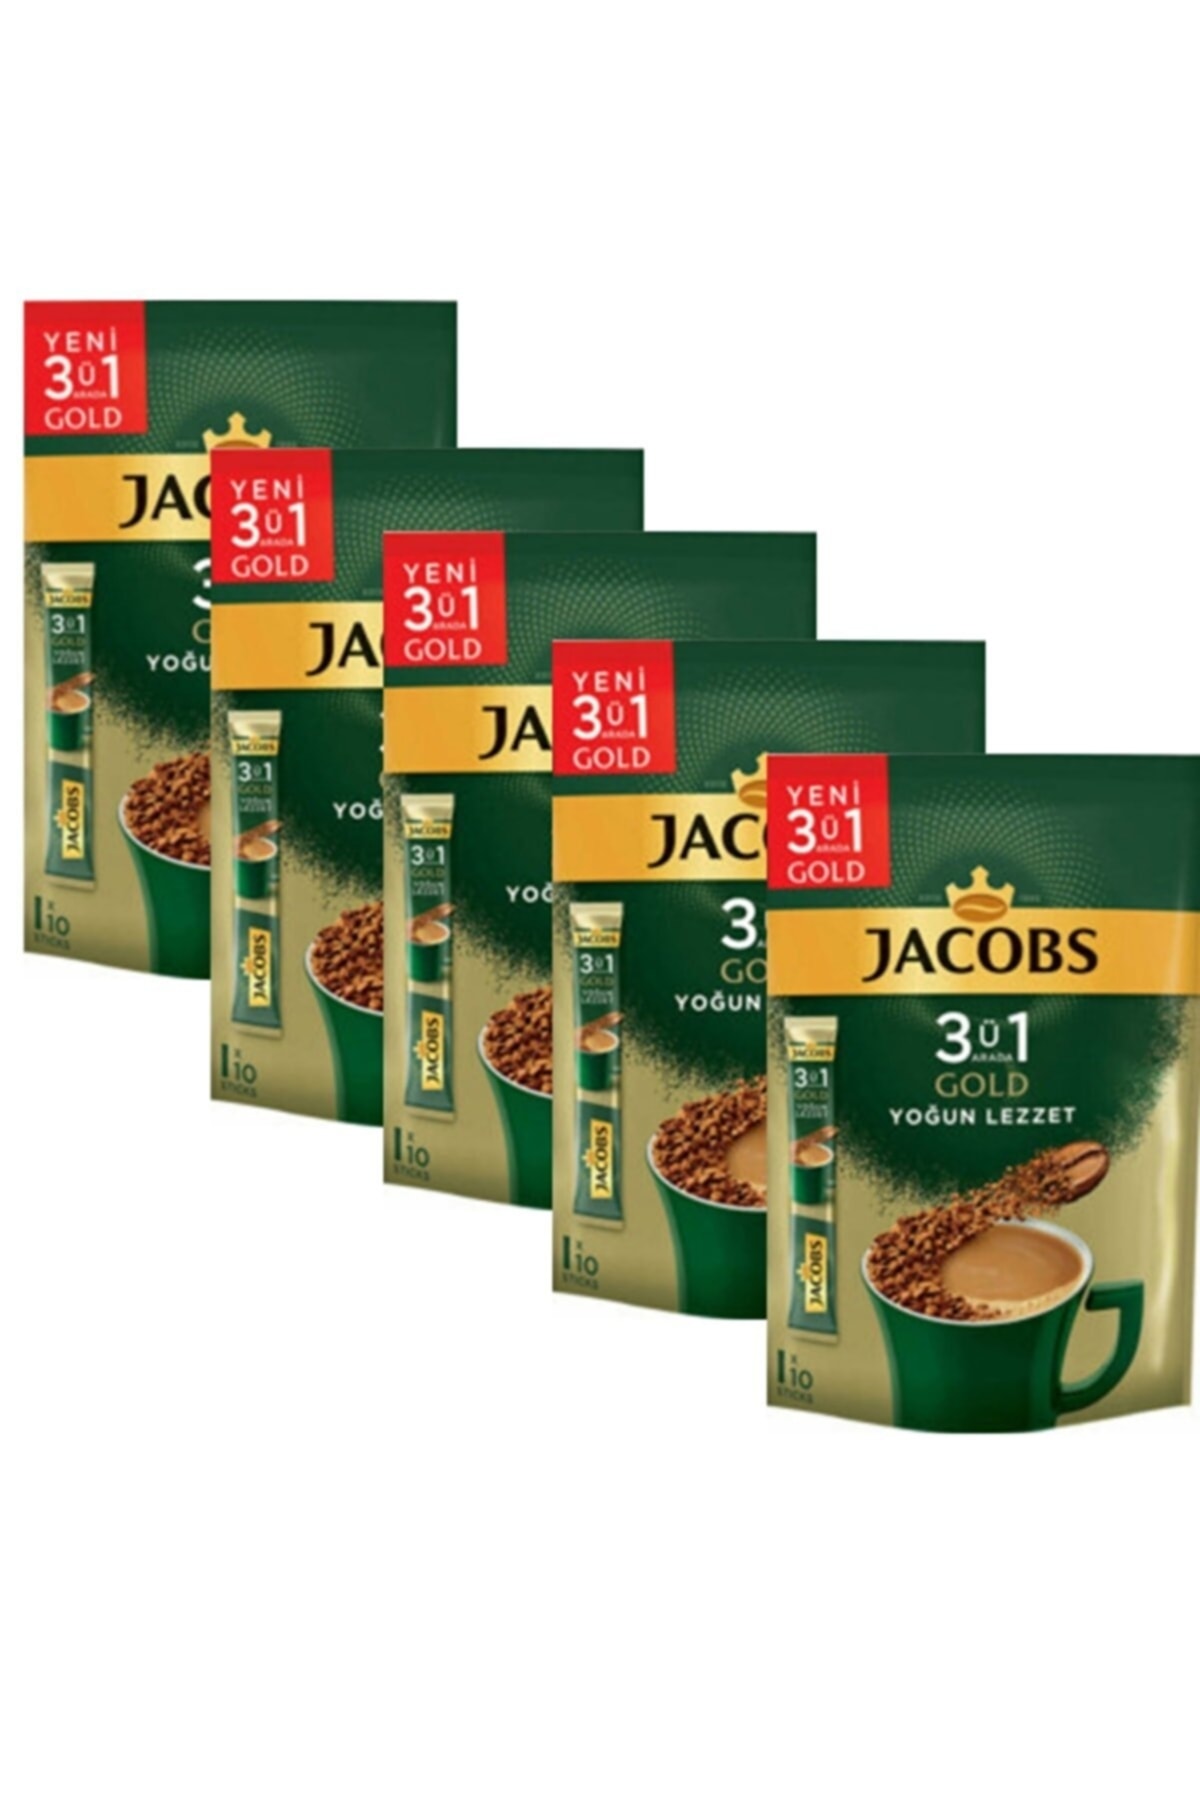 Jacobs 3 Ü 1 Arada Gold Kahve Karışımı Yoğun Lezzet 50 Adet